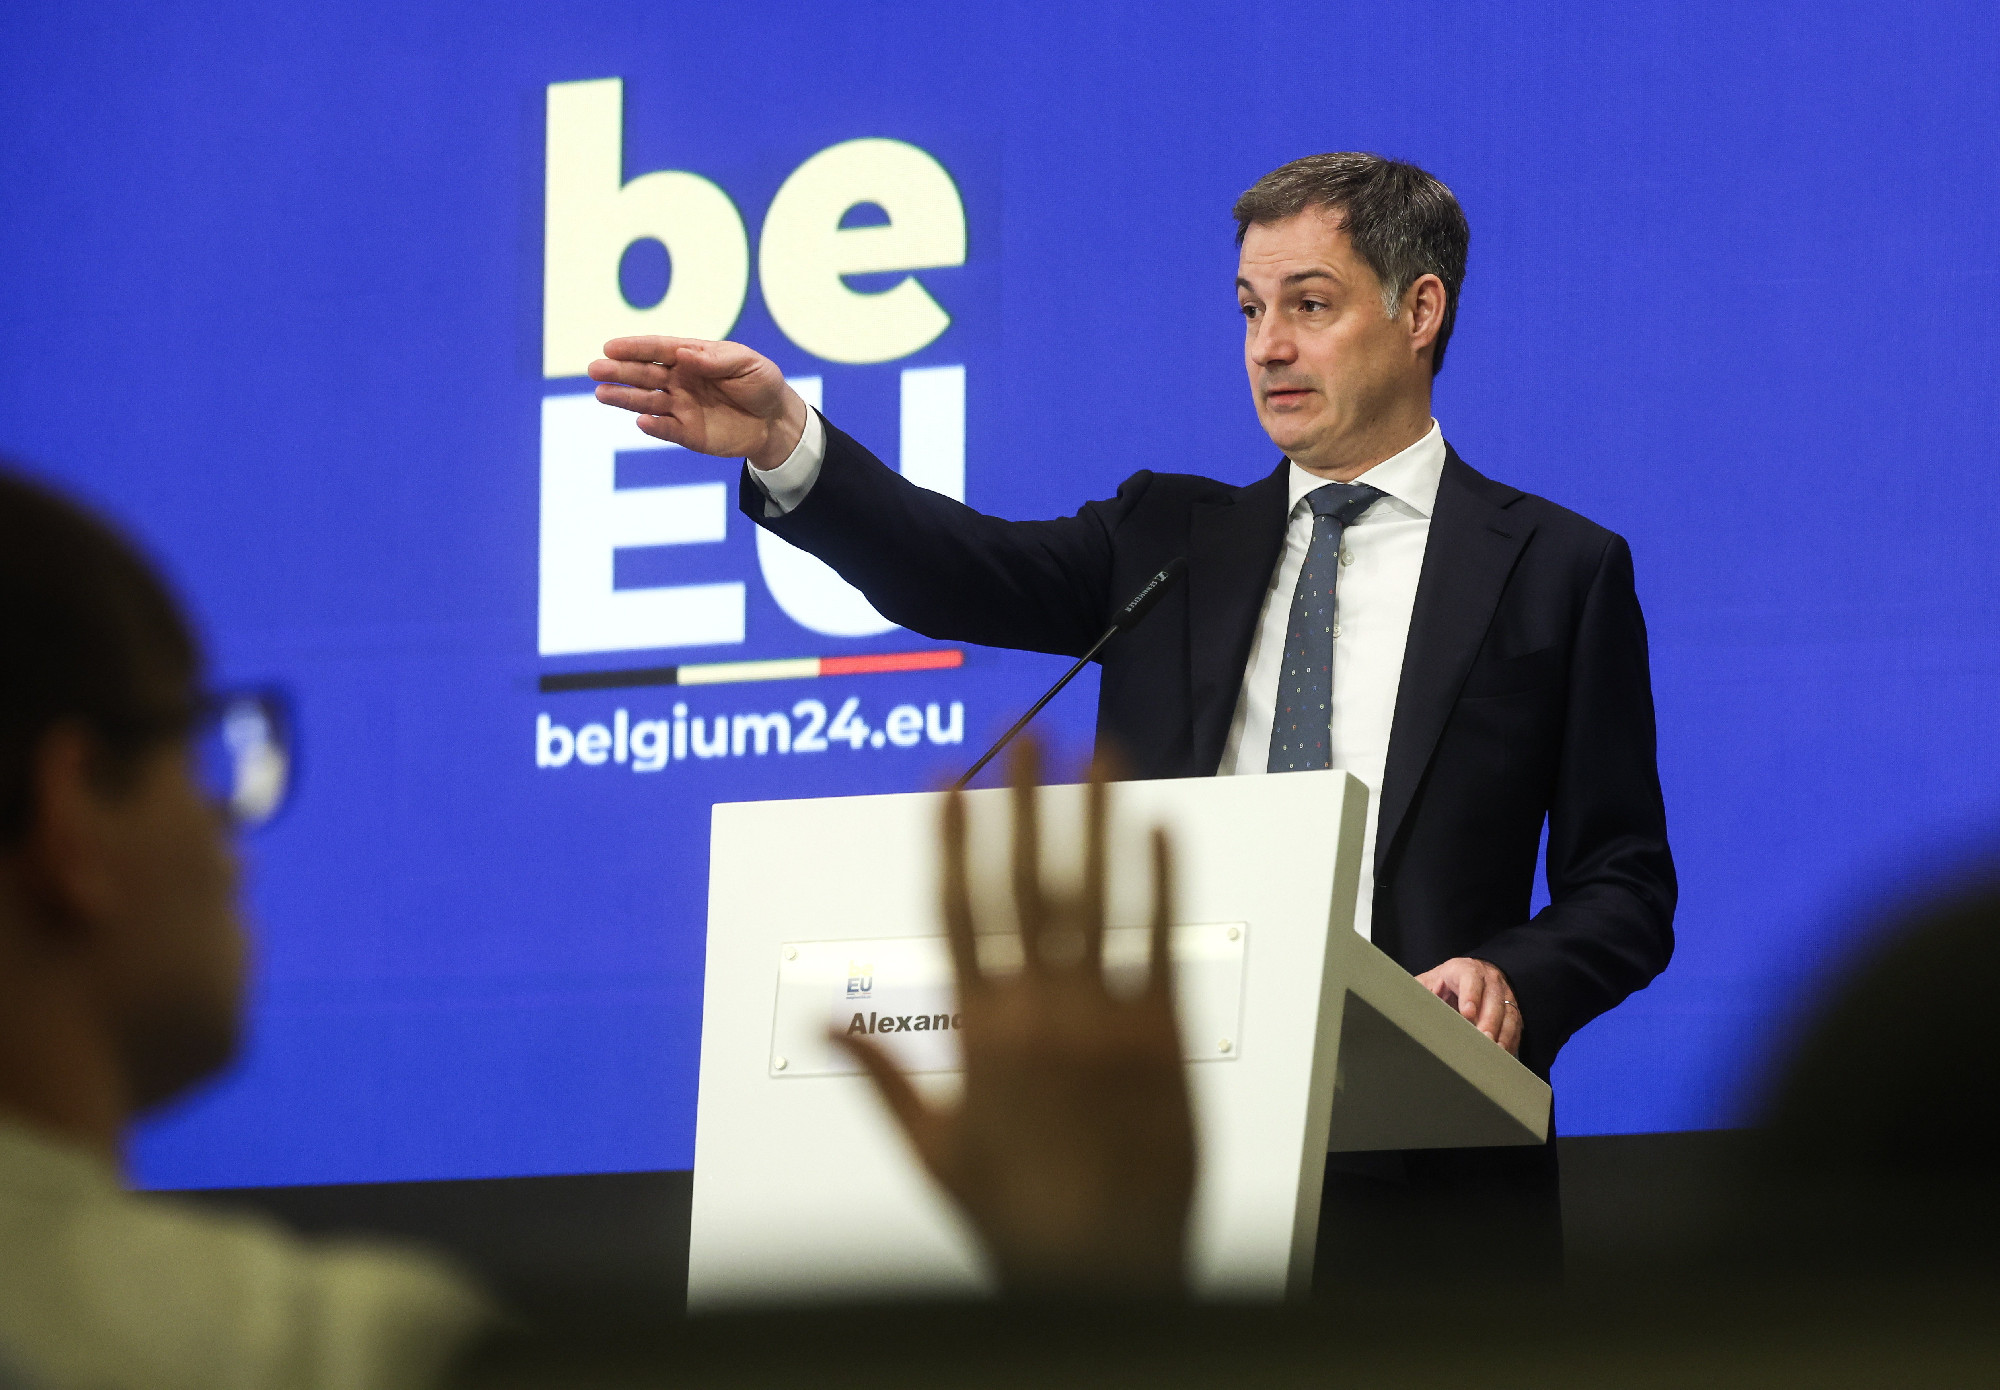 Lemondott a belga miniszterelnök a választási eredmény miatt